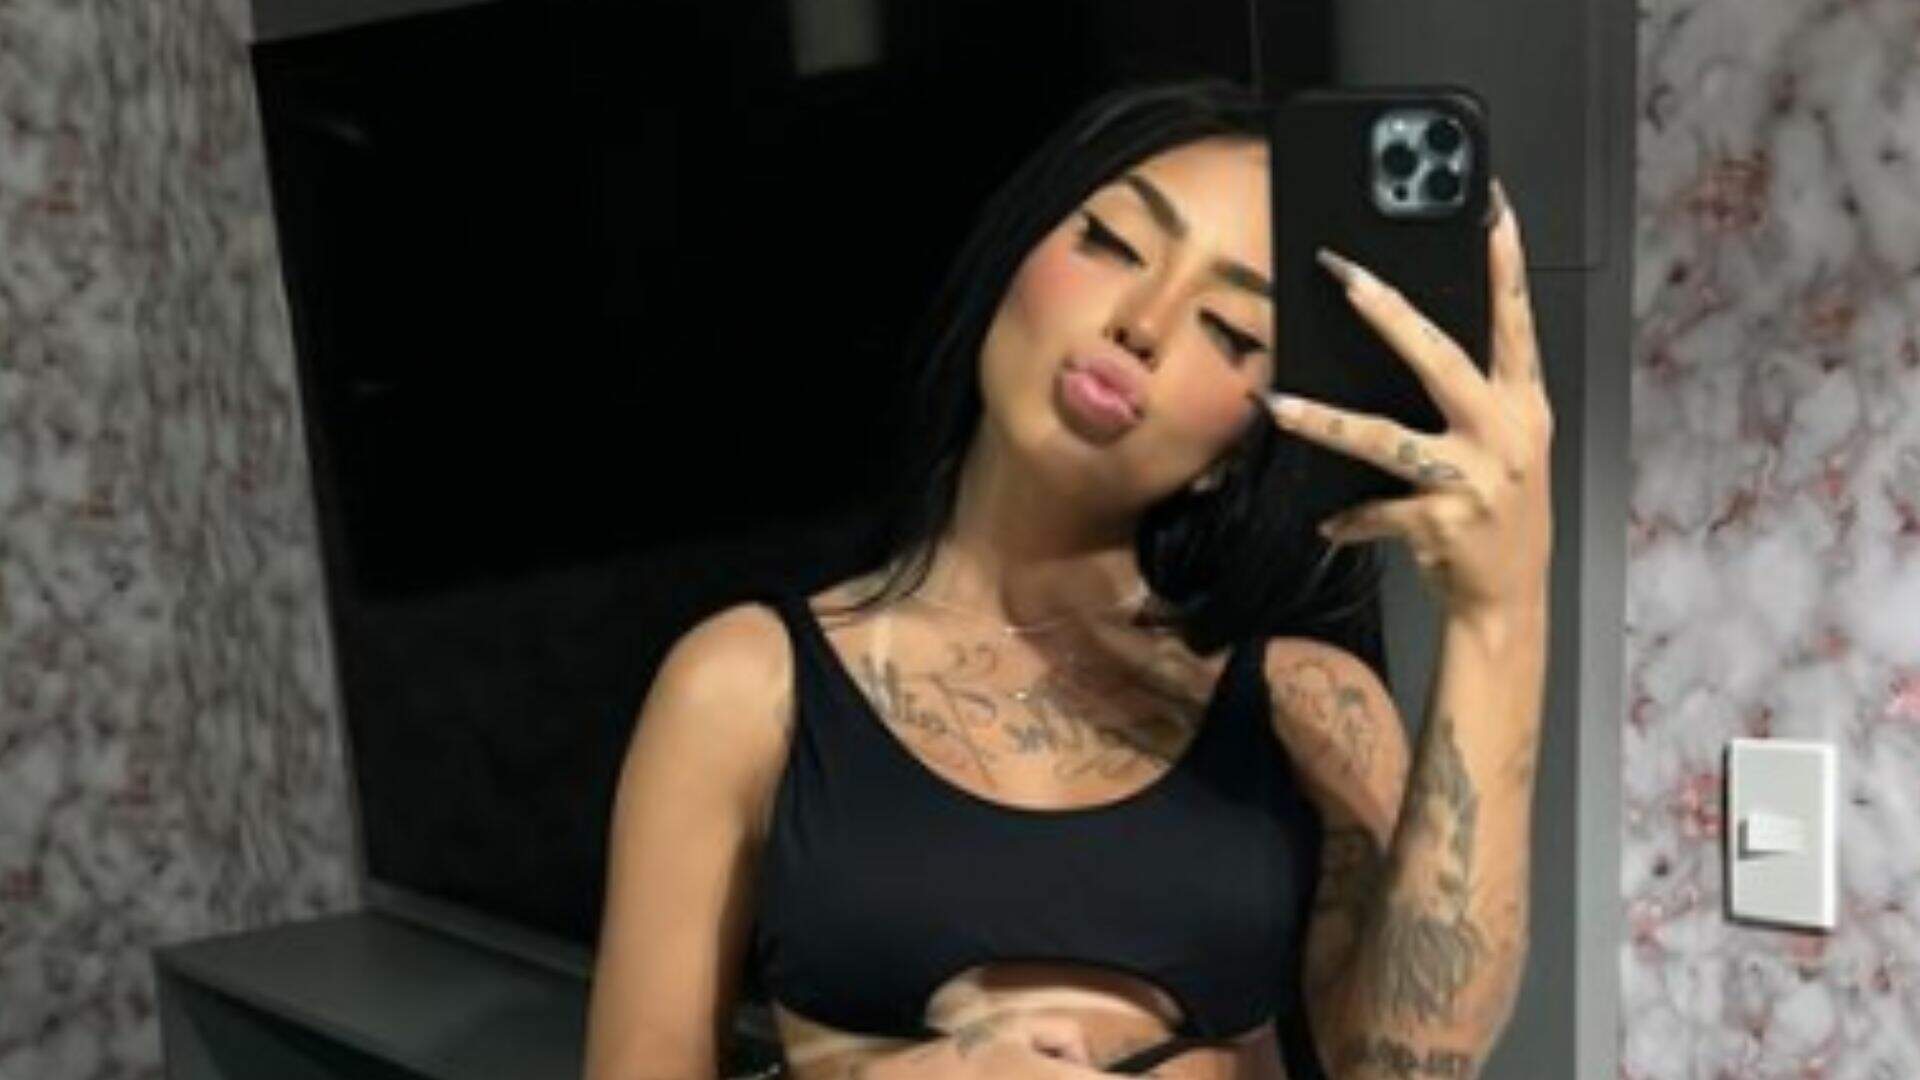 Postou errado no Instagram? Mirella aparece em vídeo público tomando banho e mostrando demais - Metropolitana FM